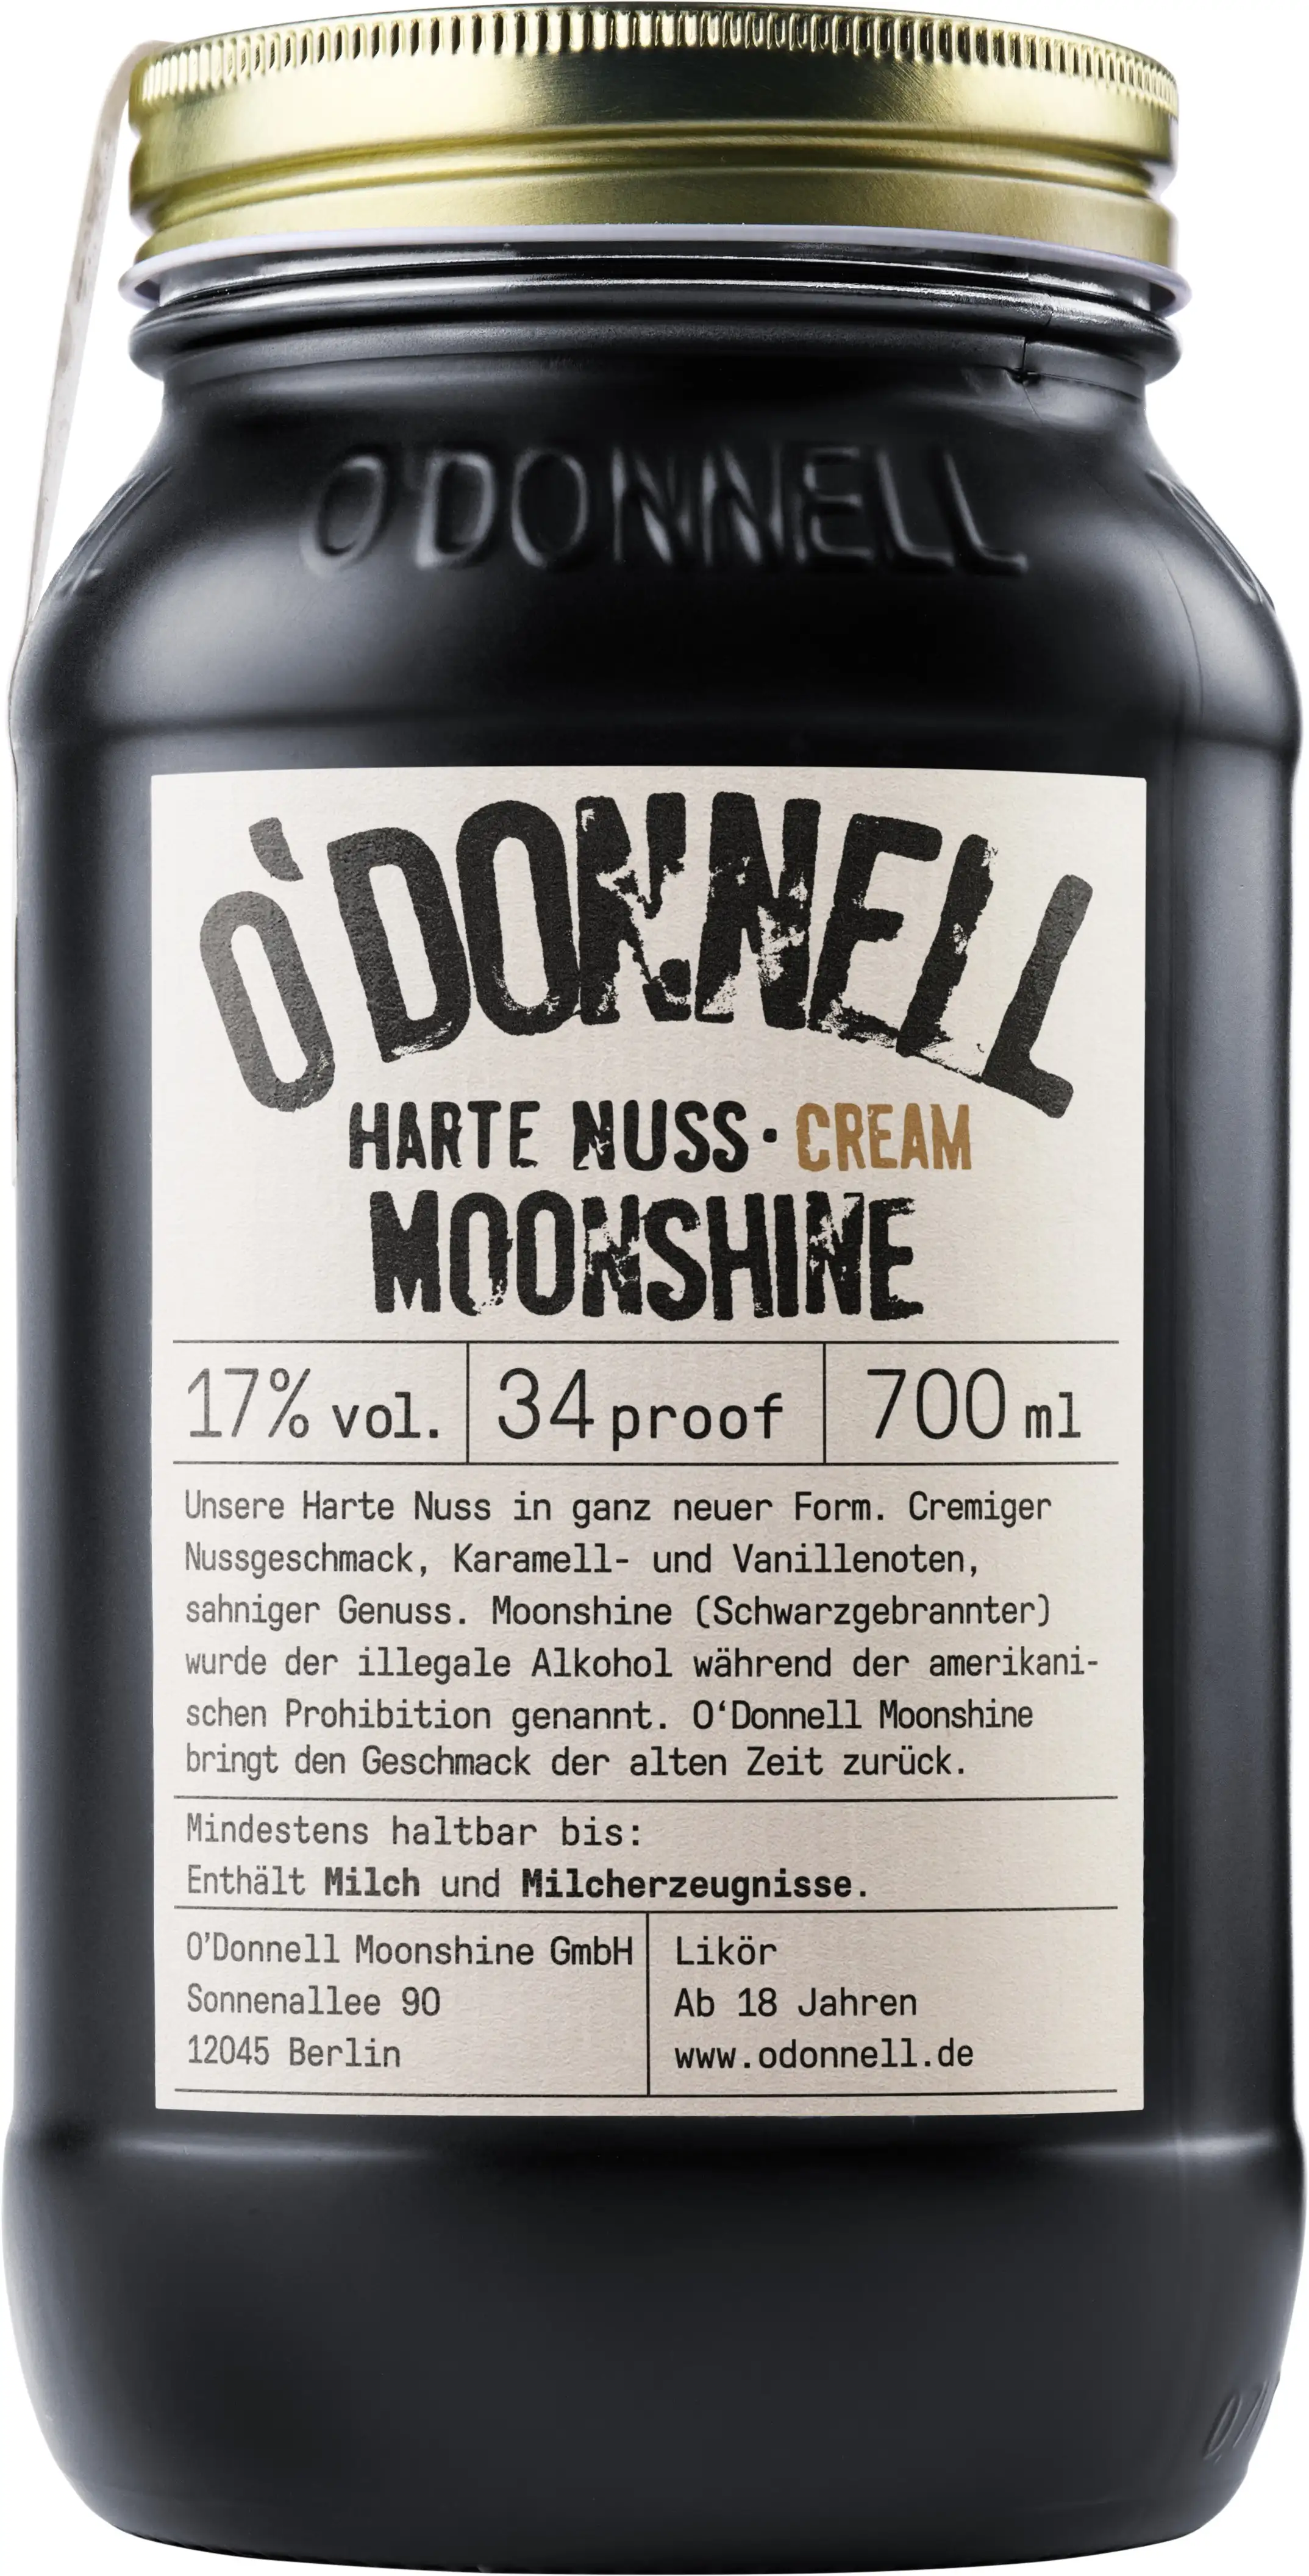 ODonnell-Moonshine-Harte-Nuss-Cream-700-ml-Likoer-900727